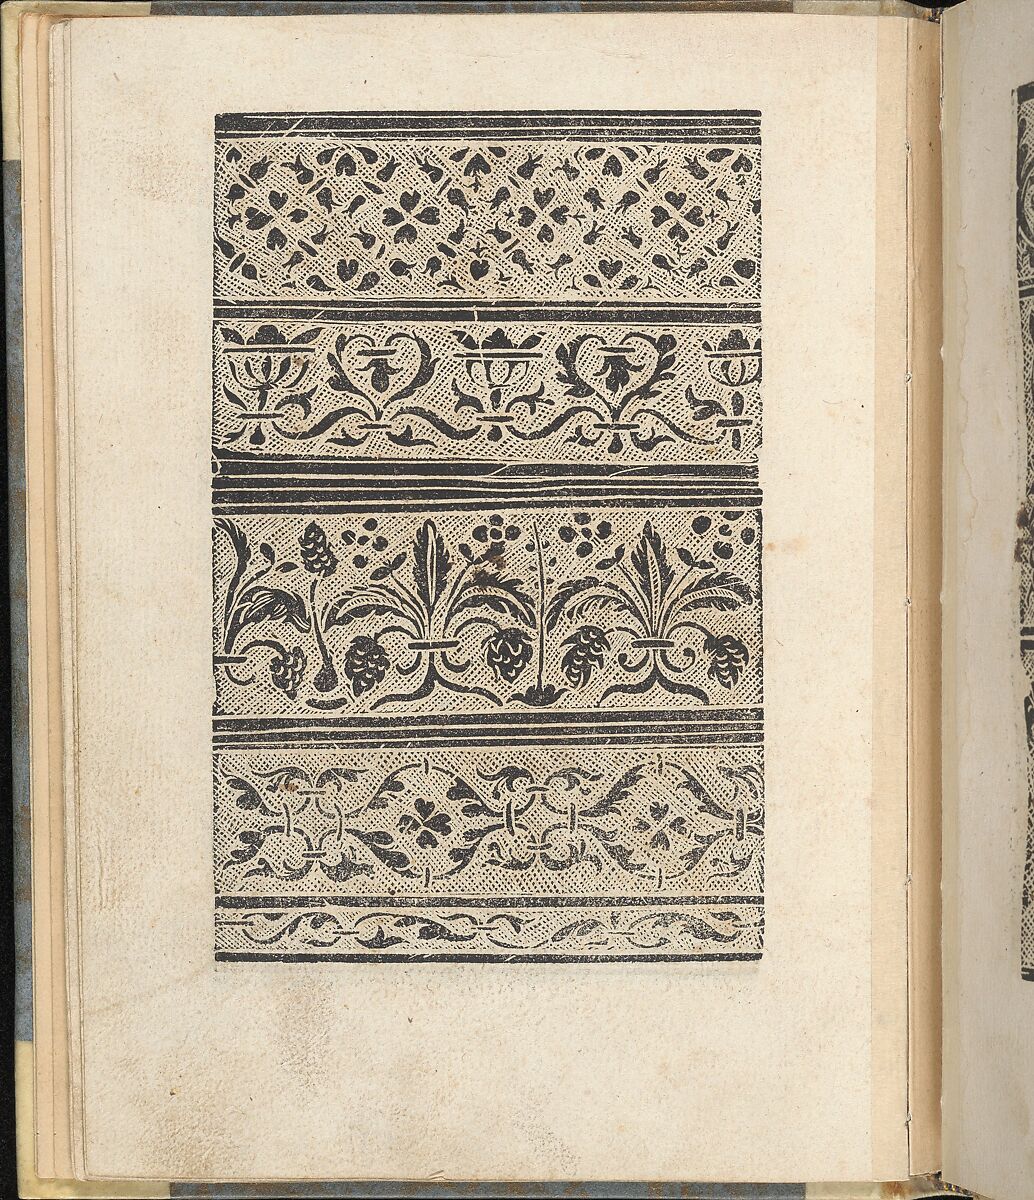 Ein ney Furmbüchlein, Page 14, verso, Johann Schönsperger the Younger (German, active 1510–30), Woodcut 